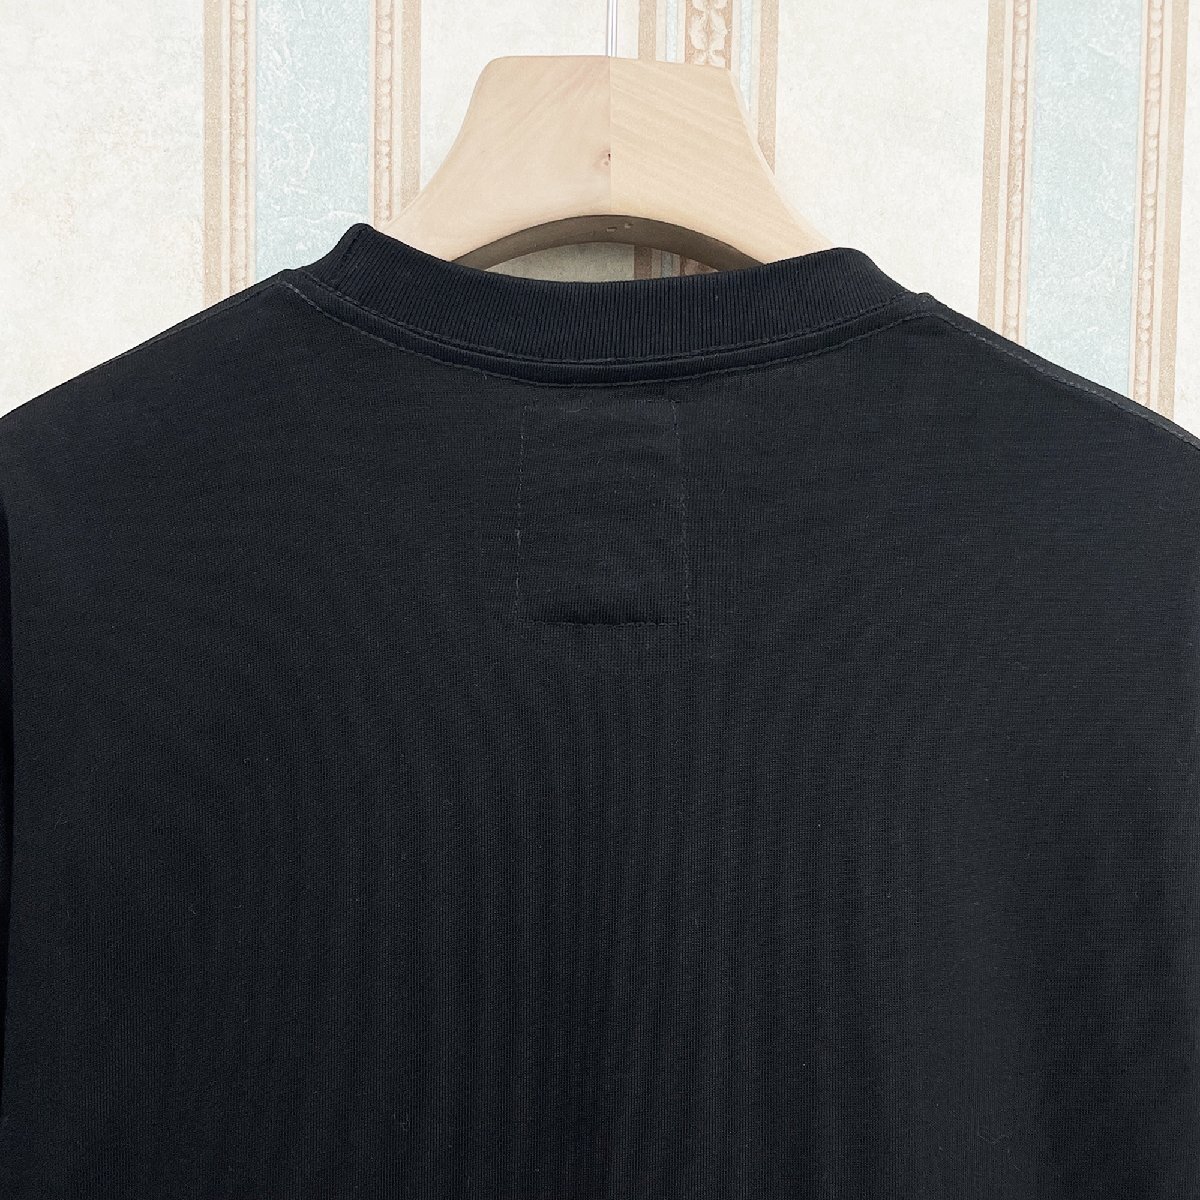 逸品 定価2万 FRANKLIN MUSK・アメリカ・ニューヨーク発 半袖Tシャツ 上質 個性 英字柄 アメカジ トップス 日常 ユニセックス サイズ3_画像7